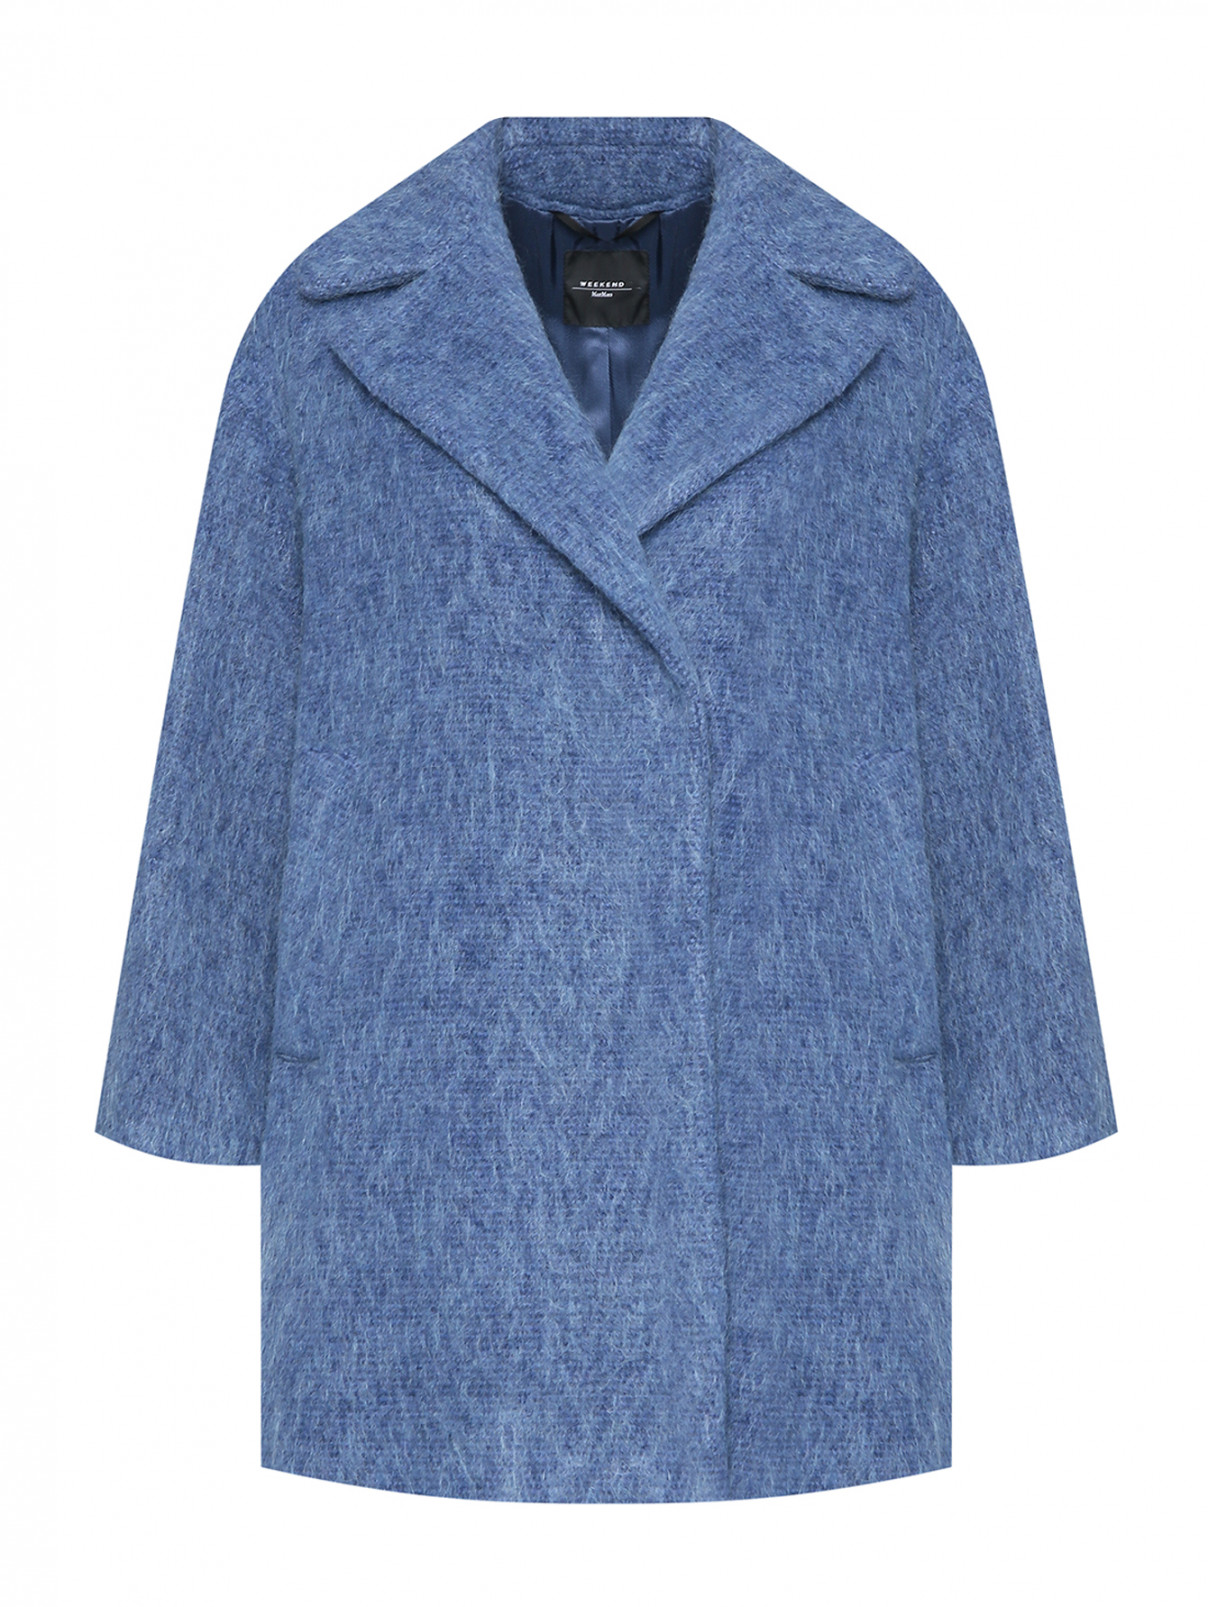 Пальто из шерсти и мохера с карманами Weekend Max Mara  –  Общий вид  – Цвет:  Синий